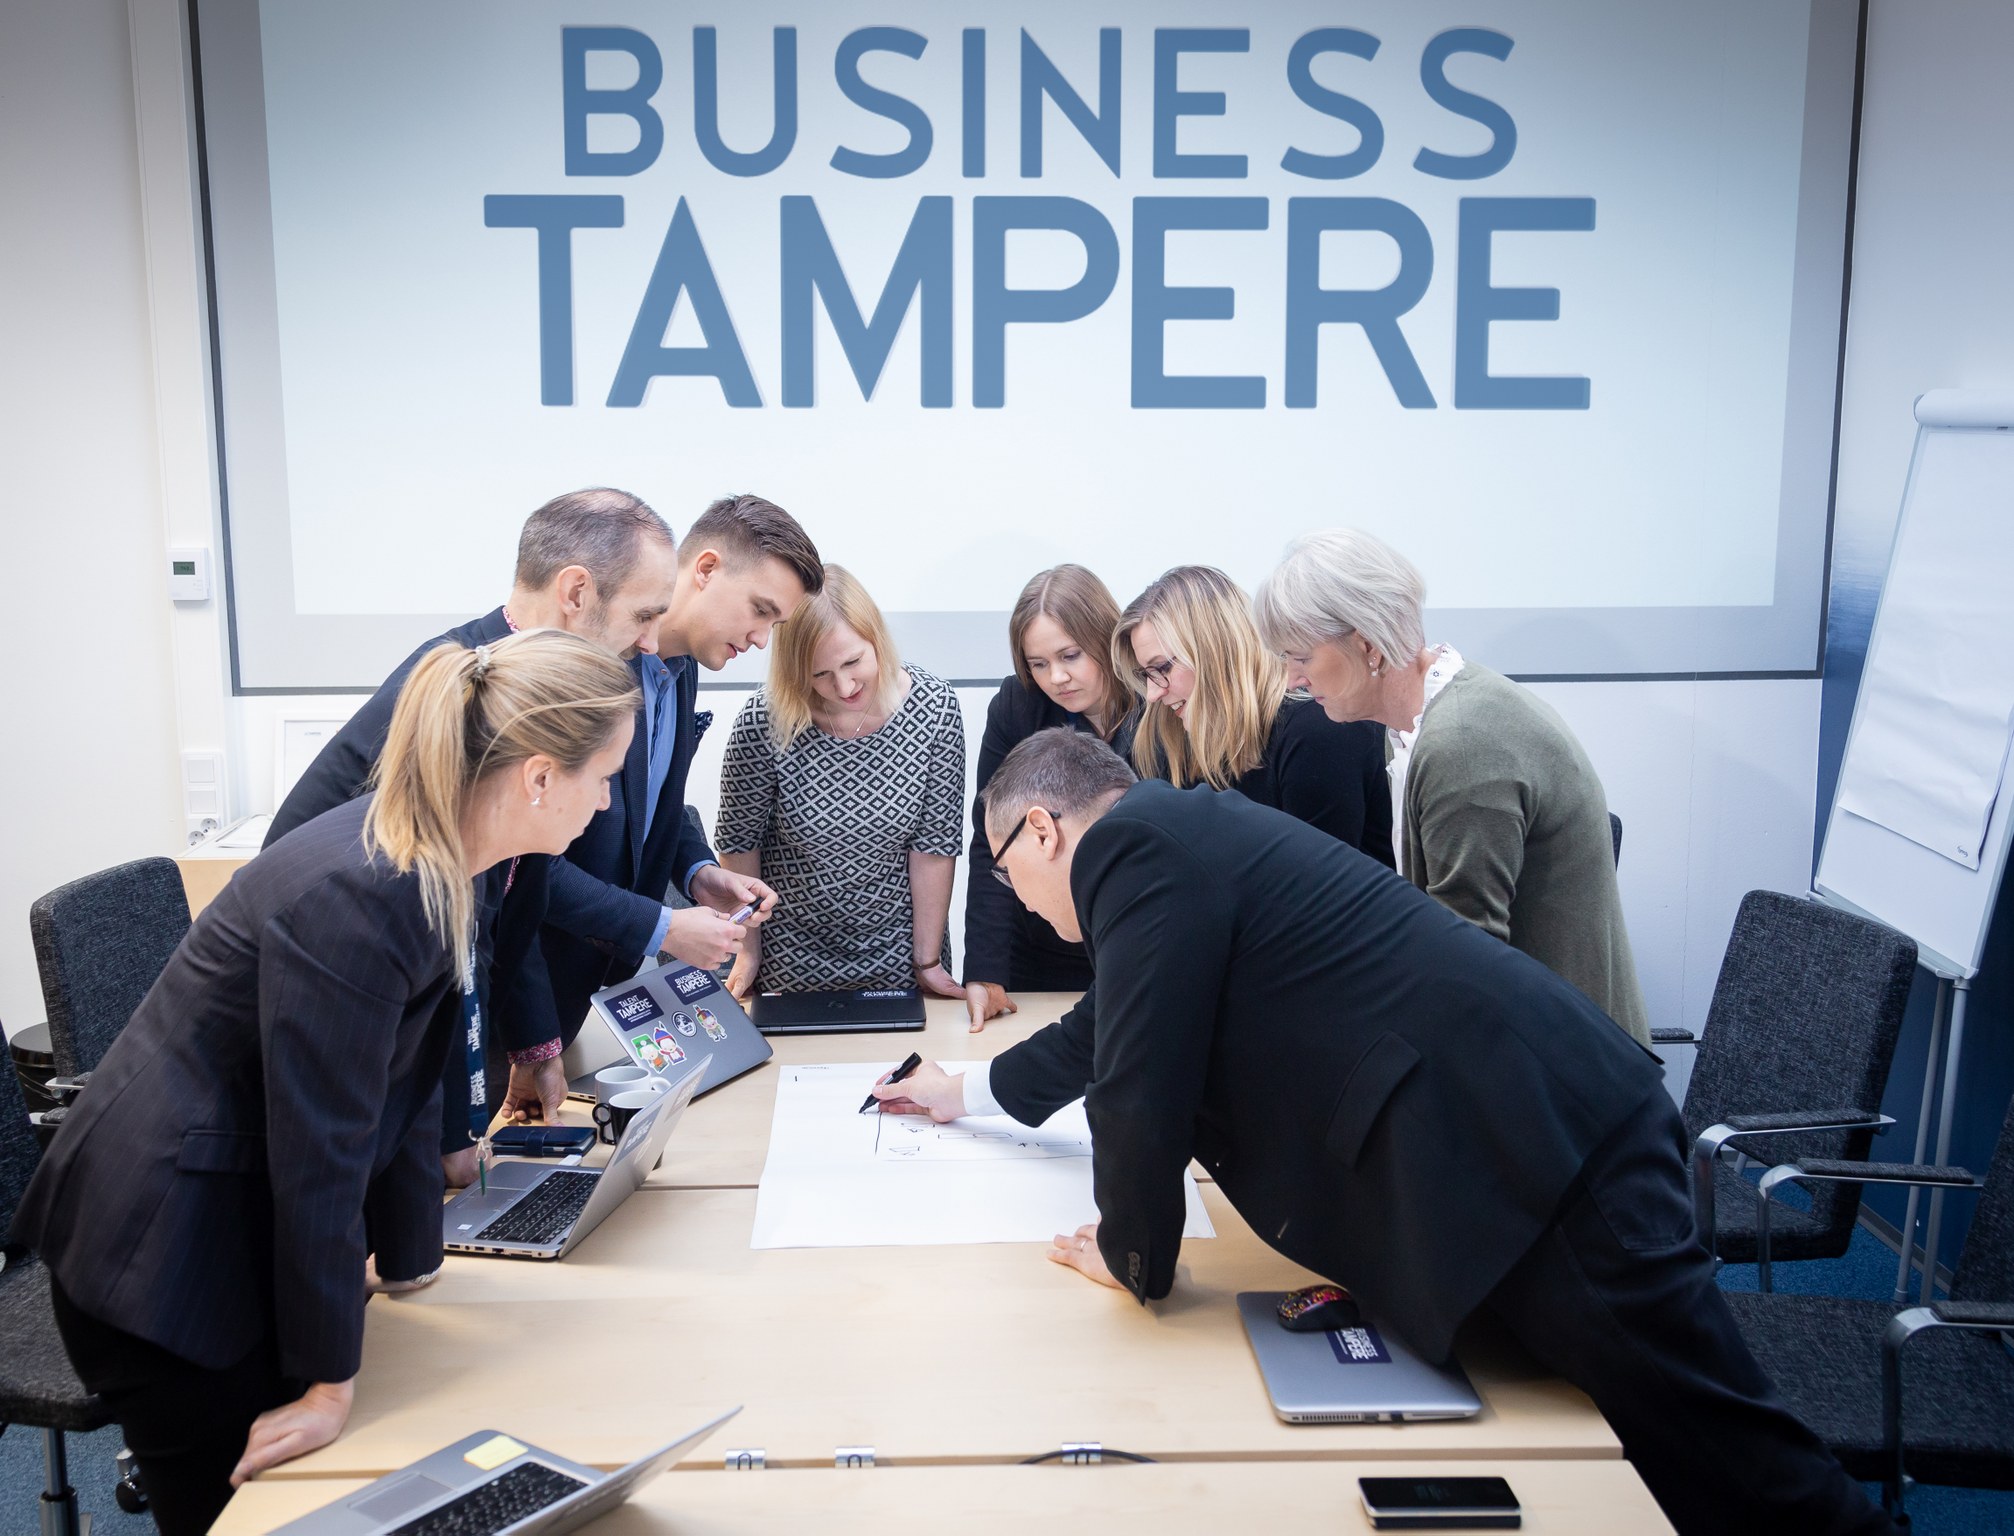 Business Tampere Kuvituskuva Mirella Mellonmaa 4 1